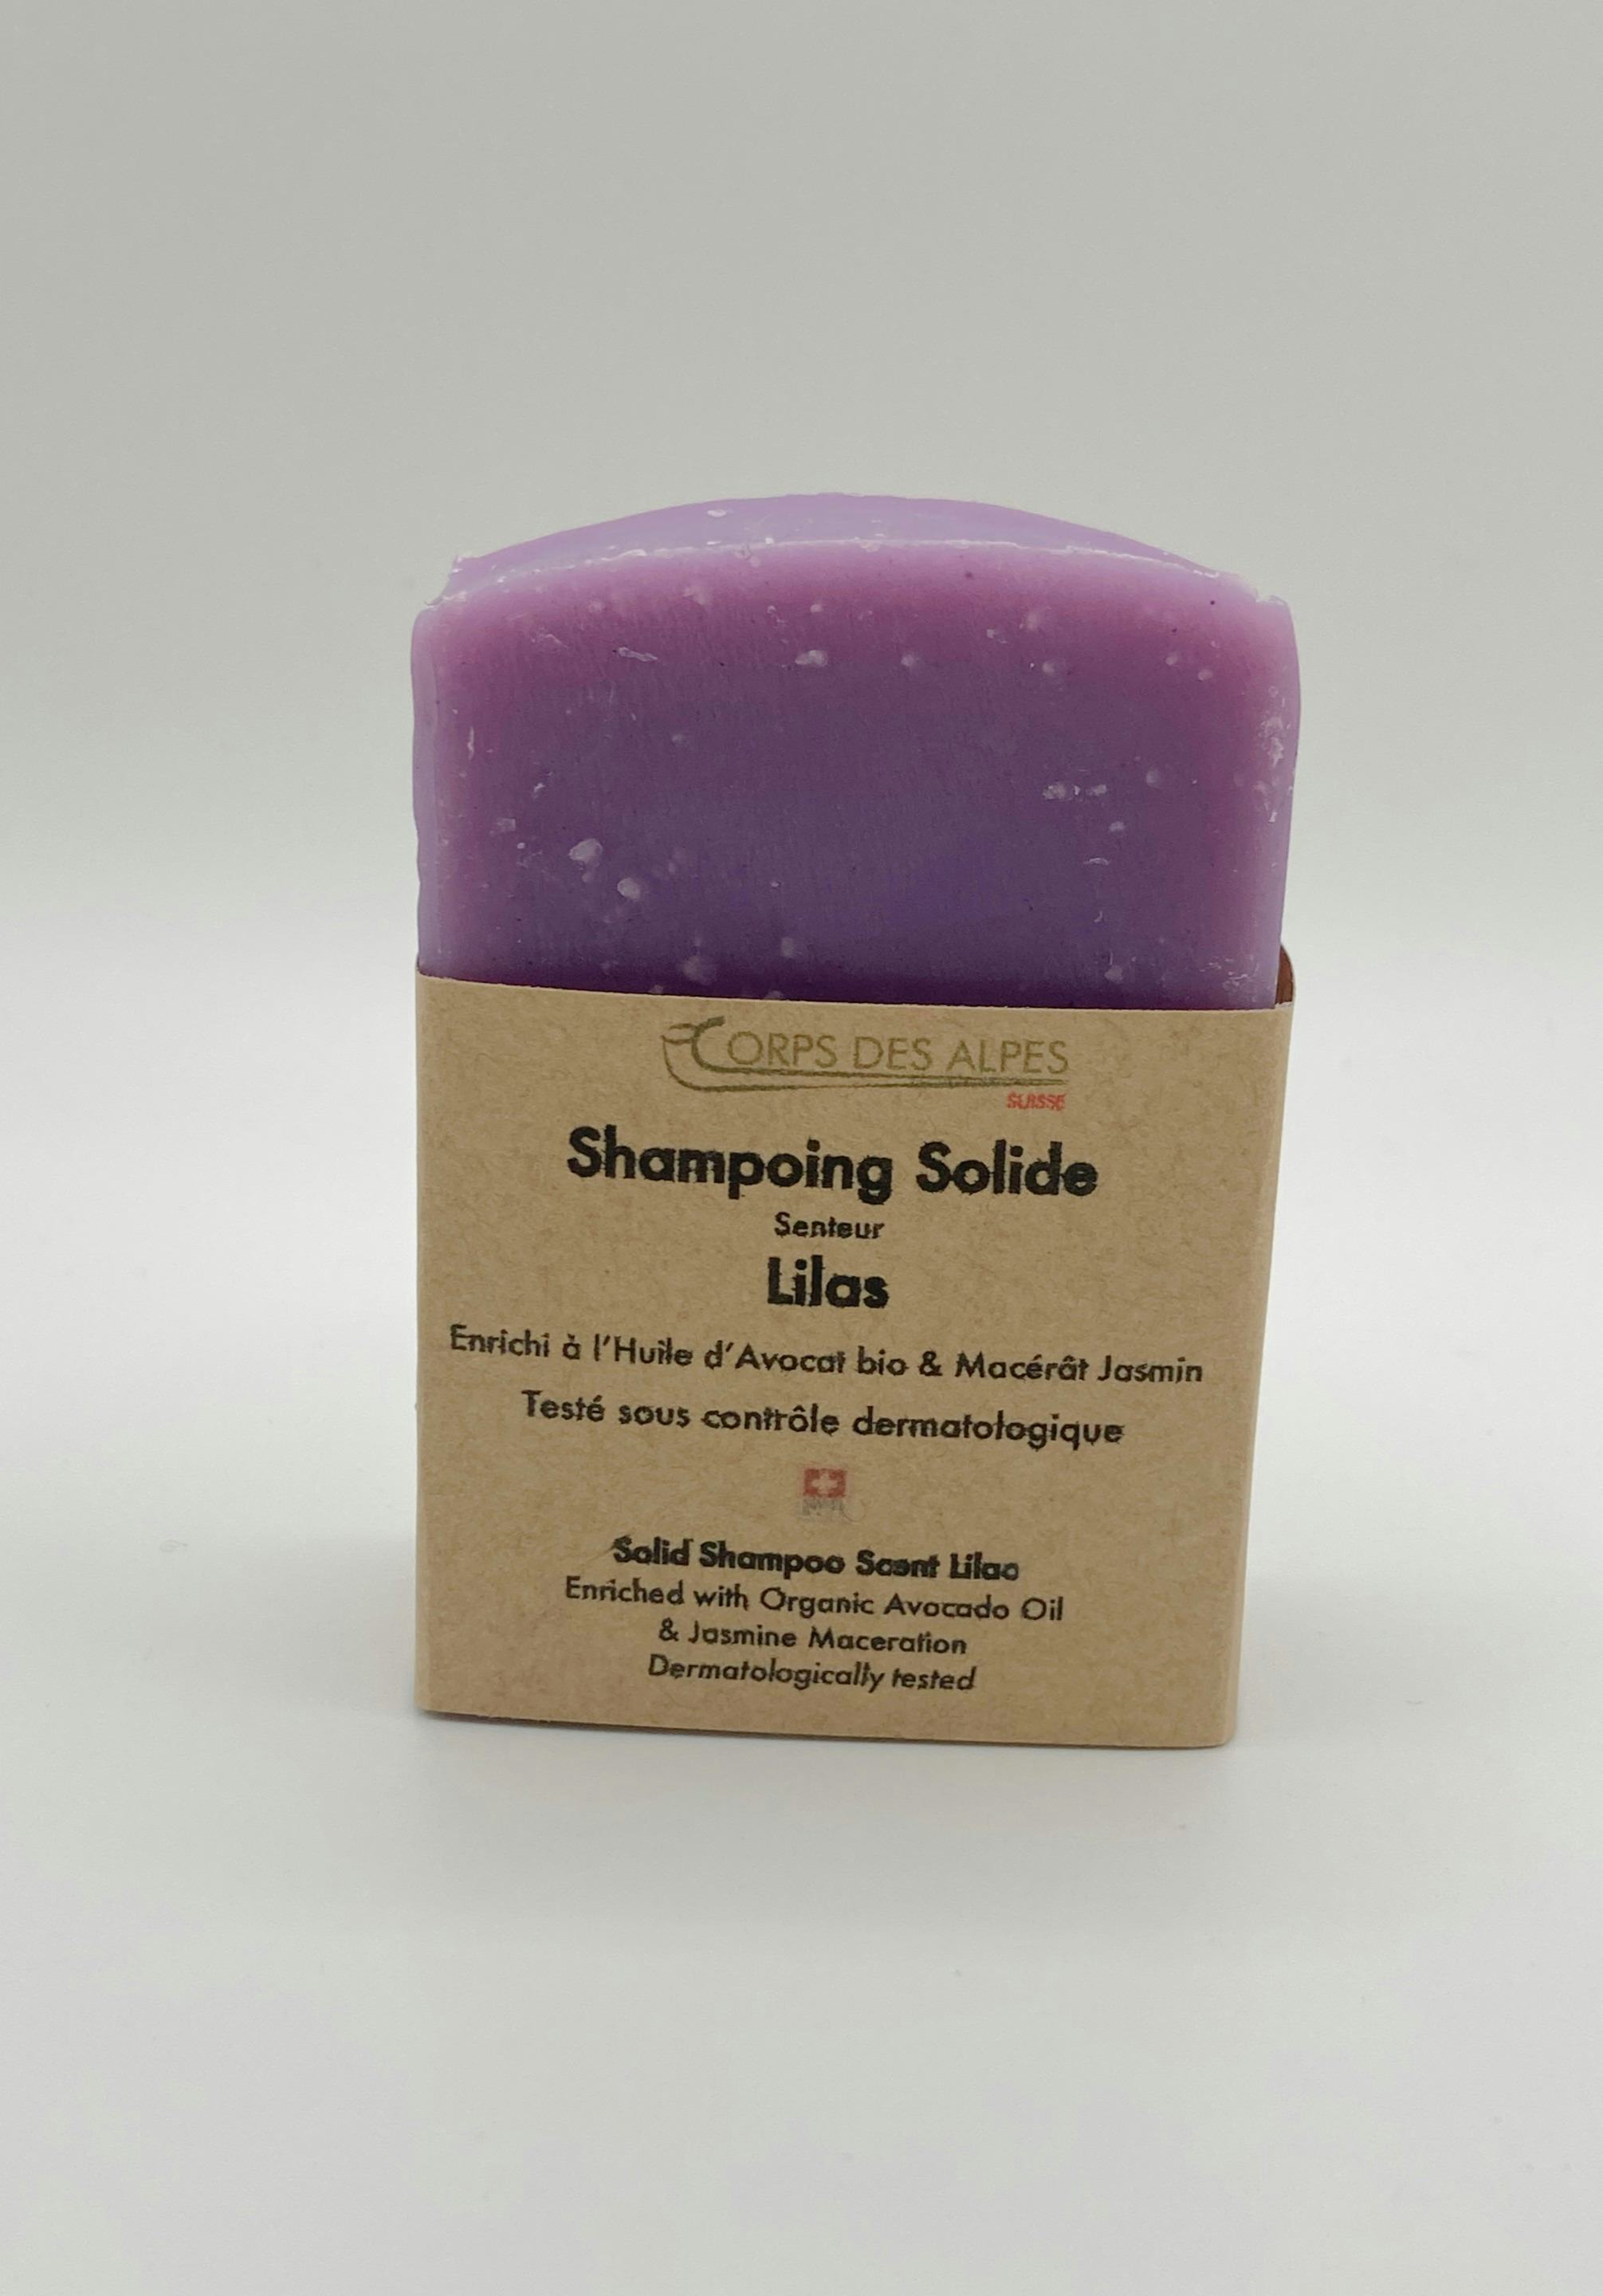 Shampoing solide senteur Lilas, produit artisanal en vente directe en Suisse